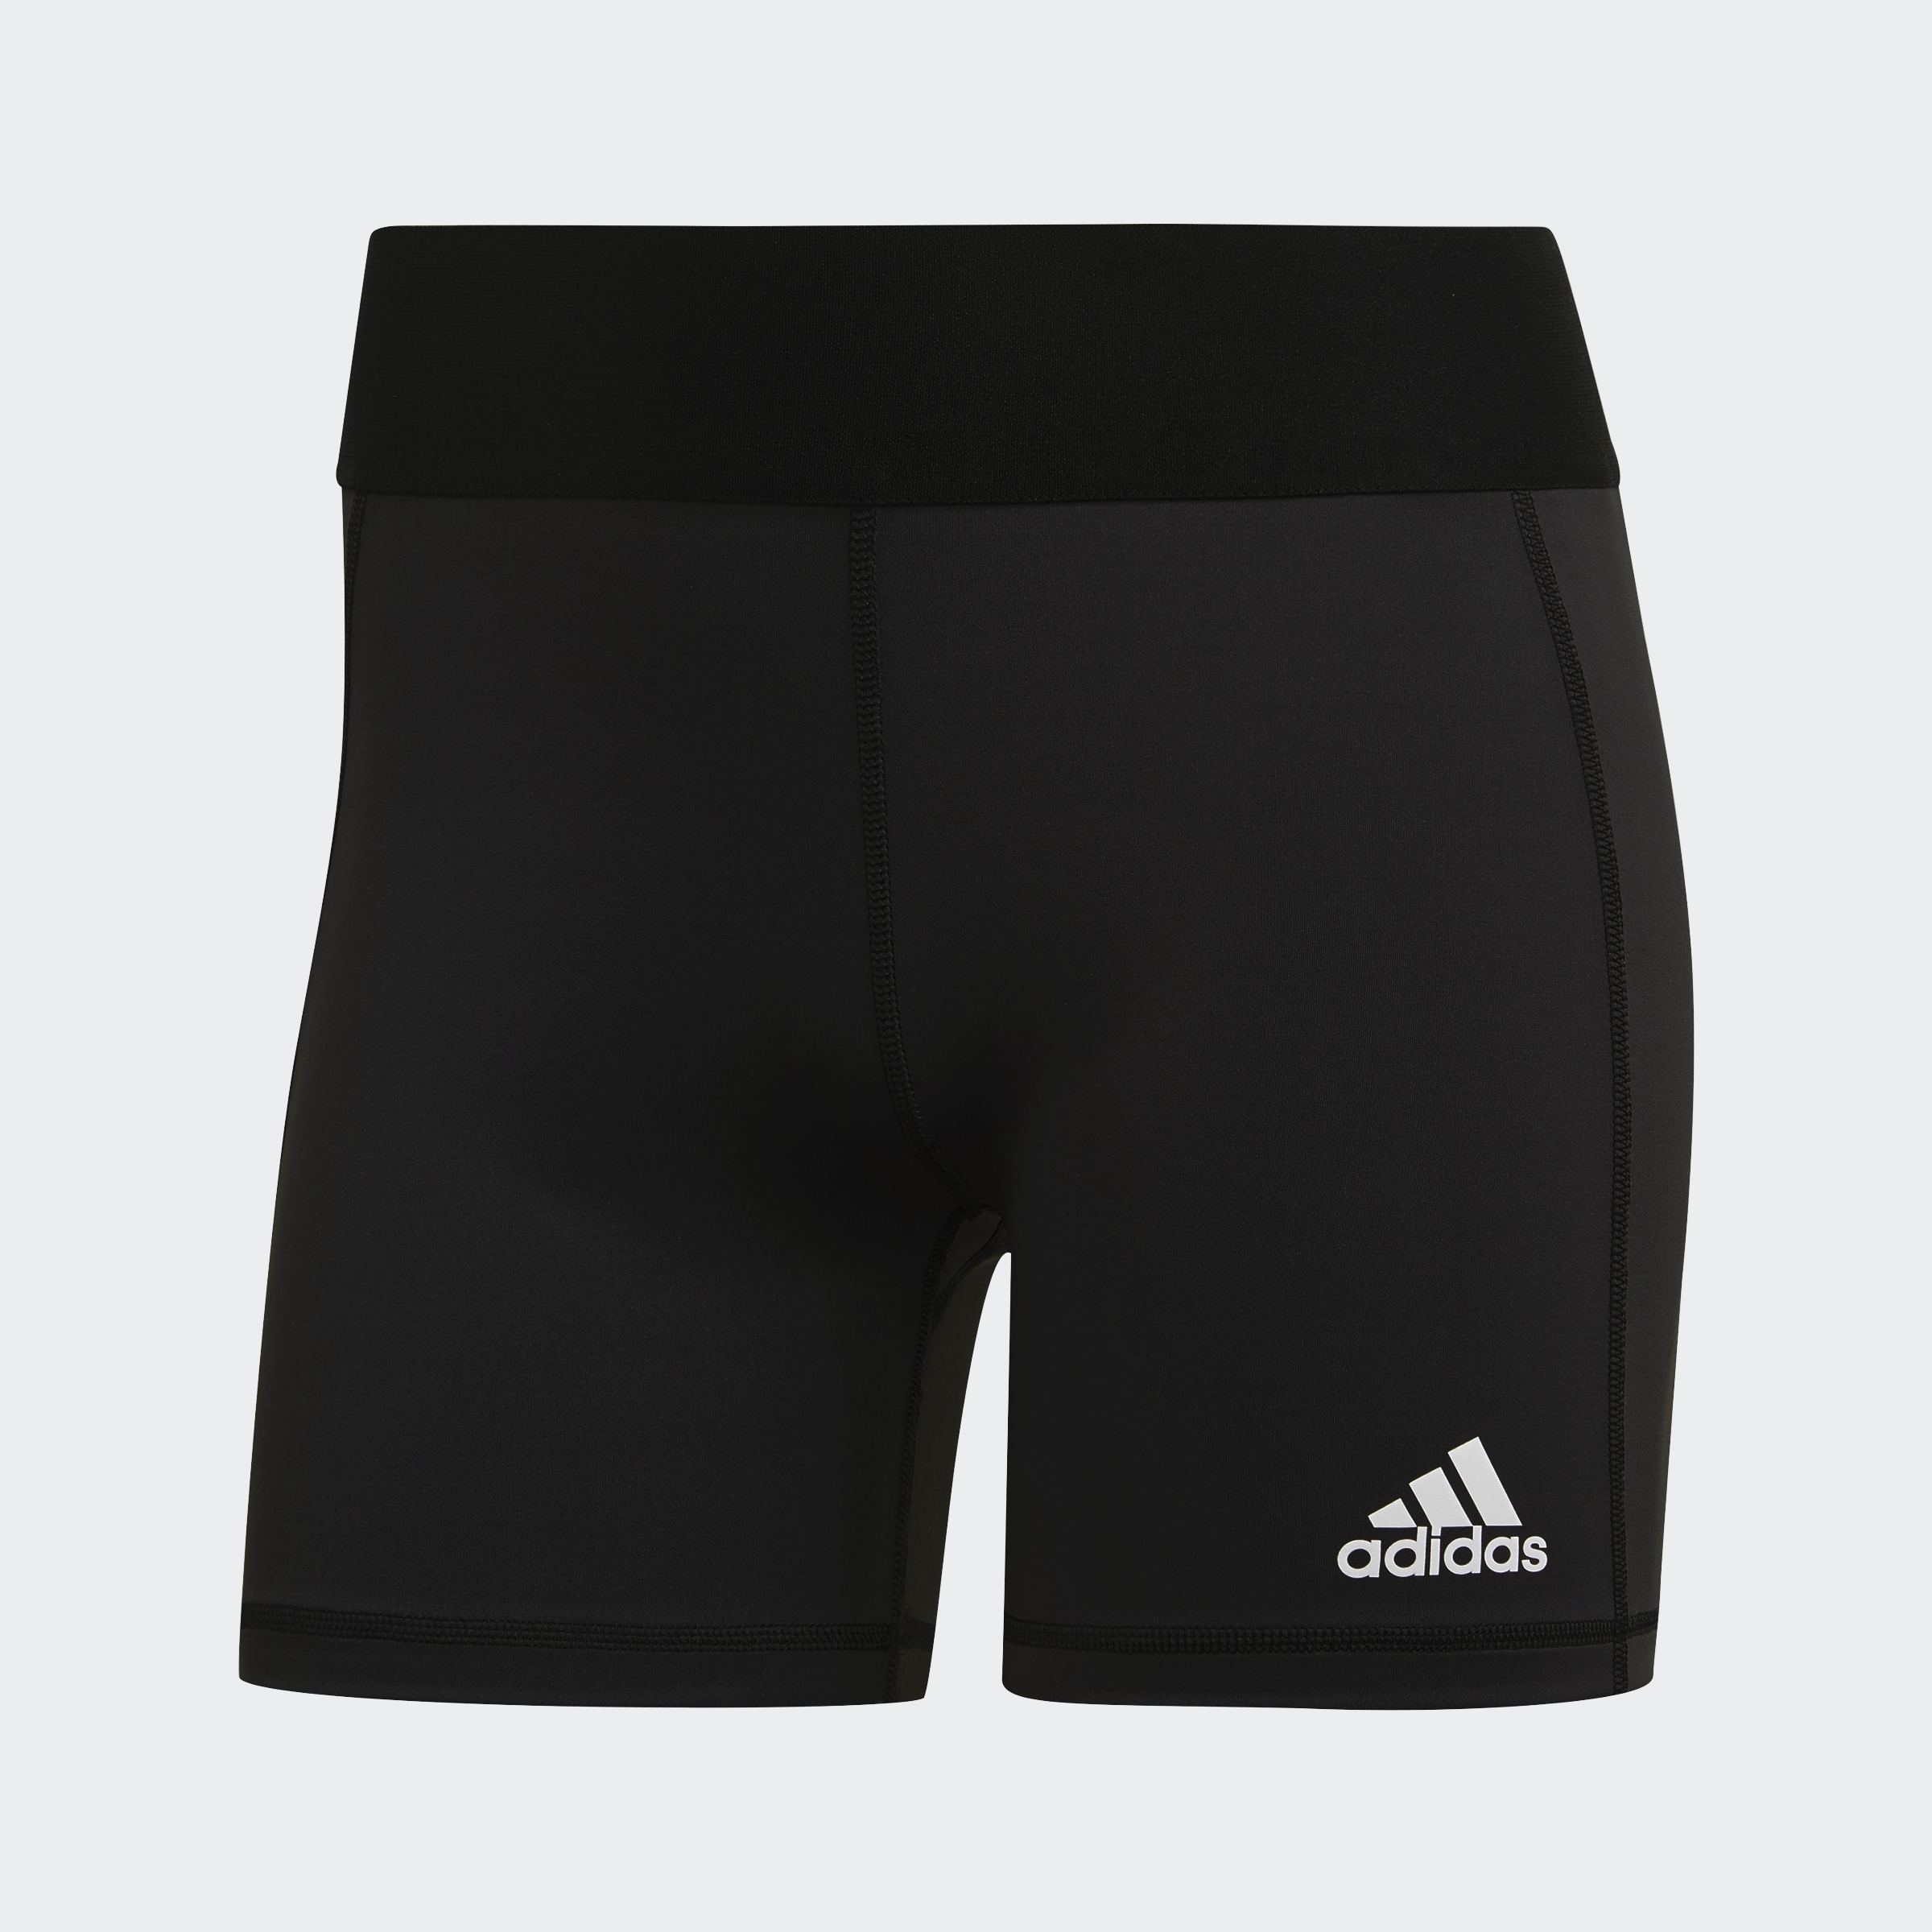 Adidas Volley Team 3. Волейбольные шорты. Волейбольные юбка шорты.